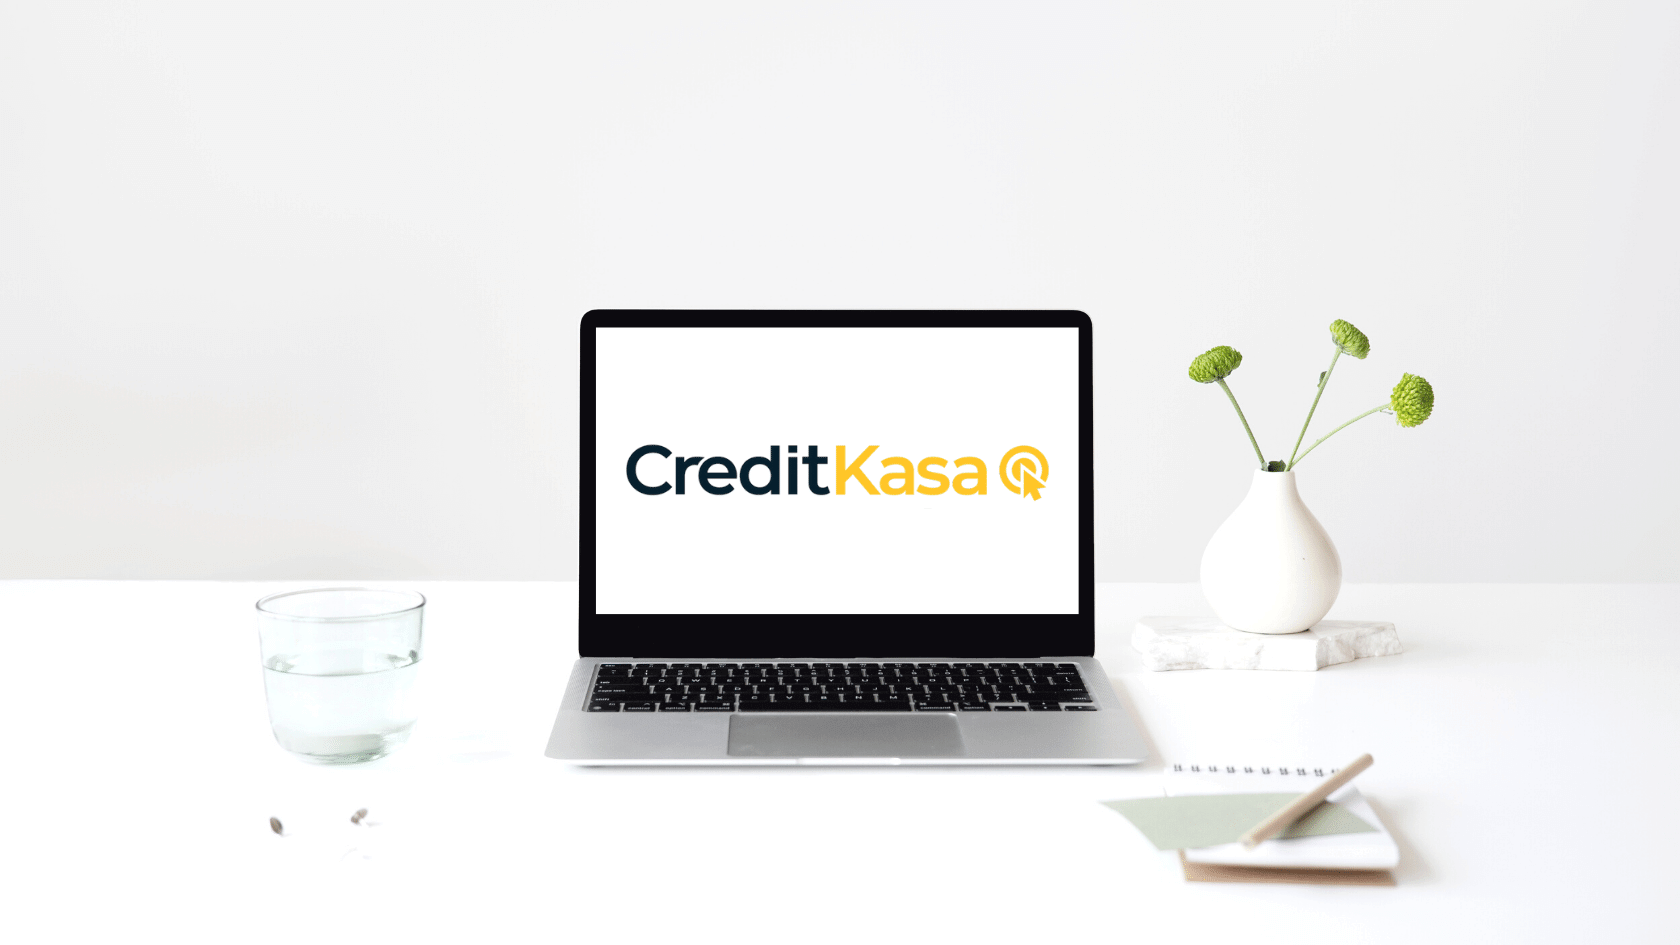 Условия кредитования Credit Kasa